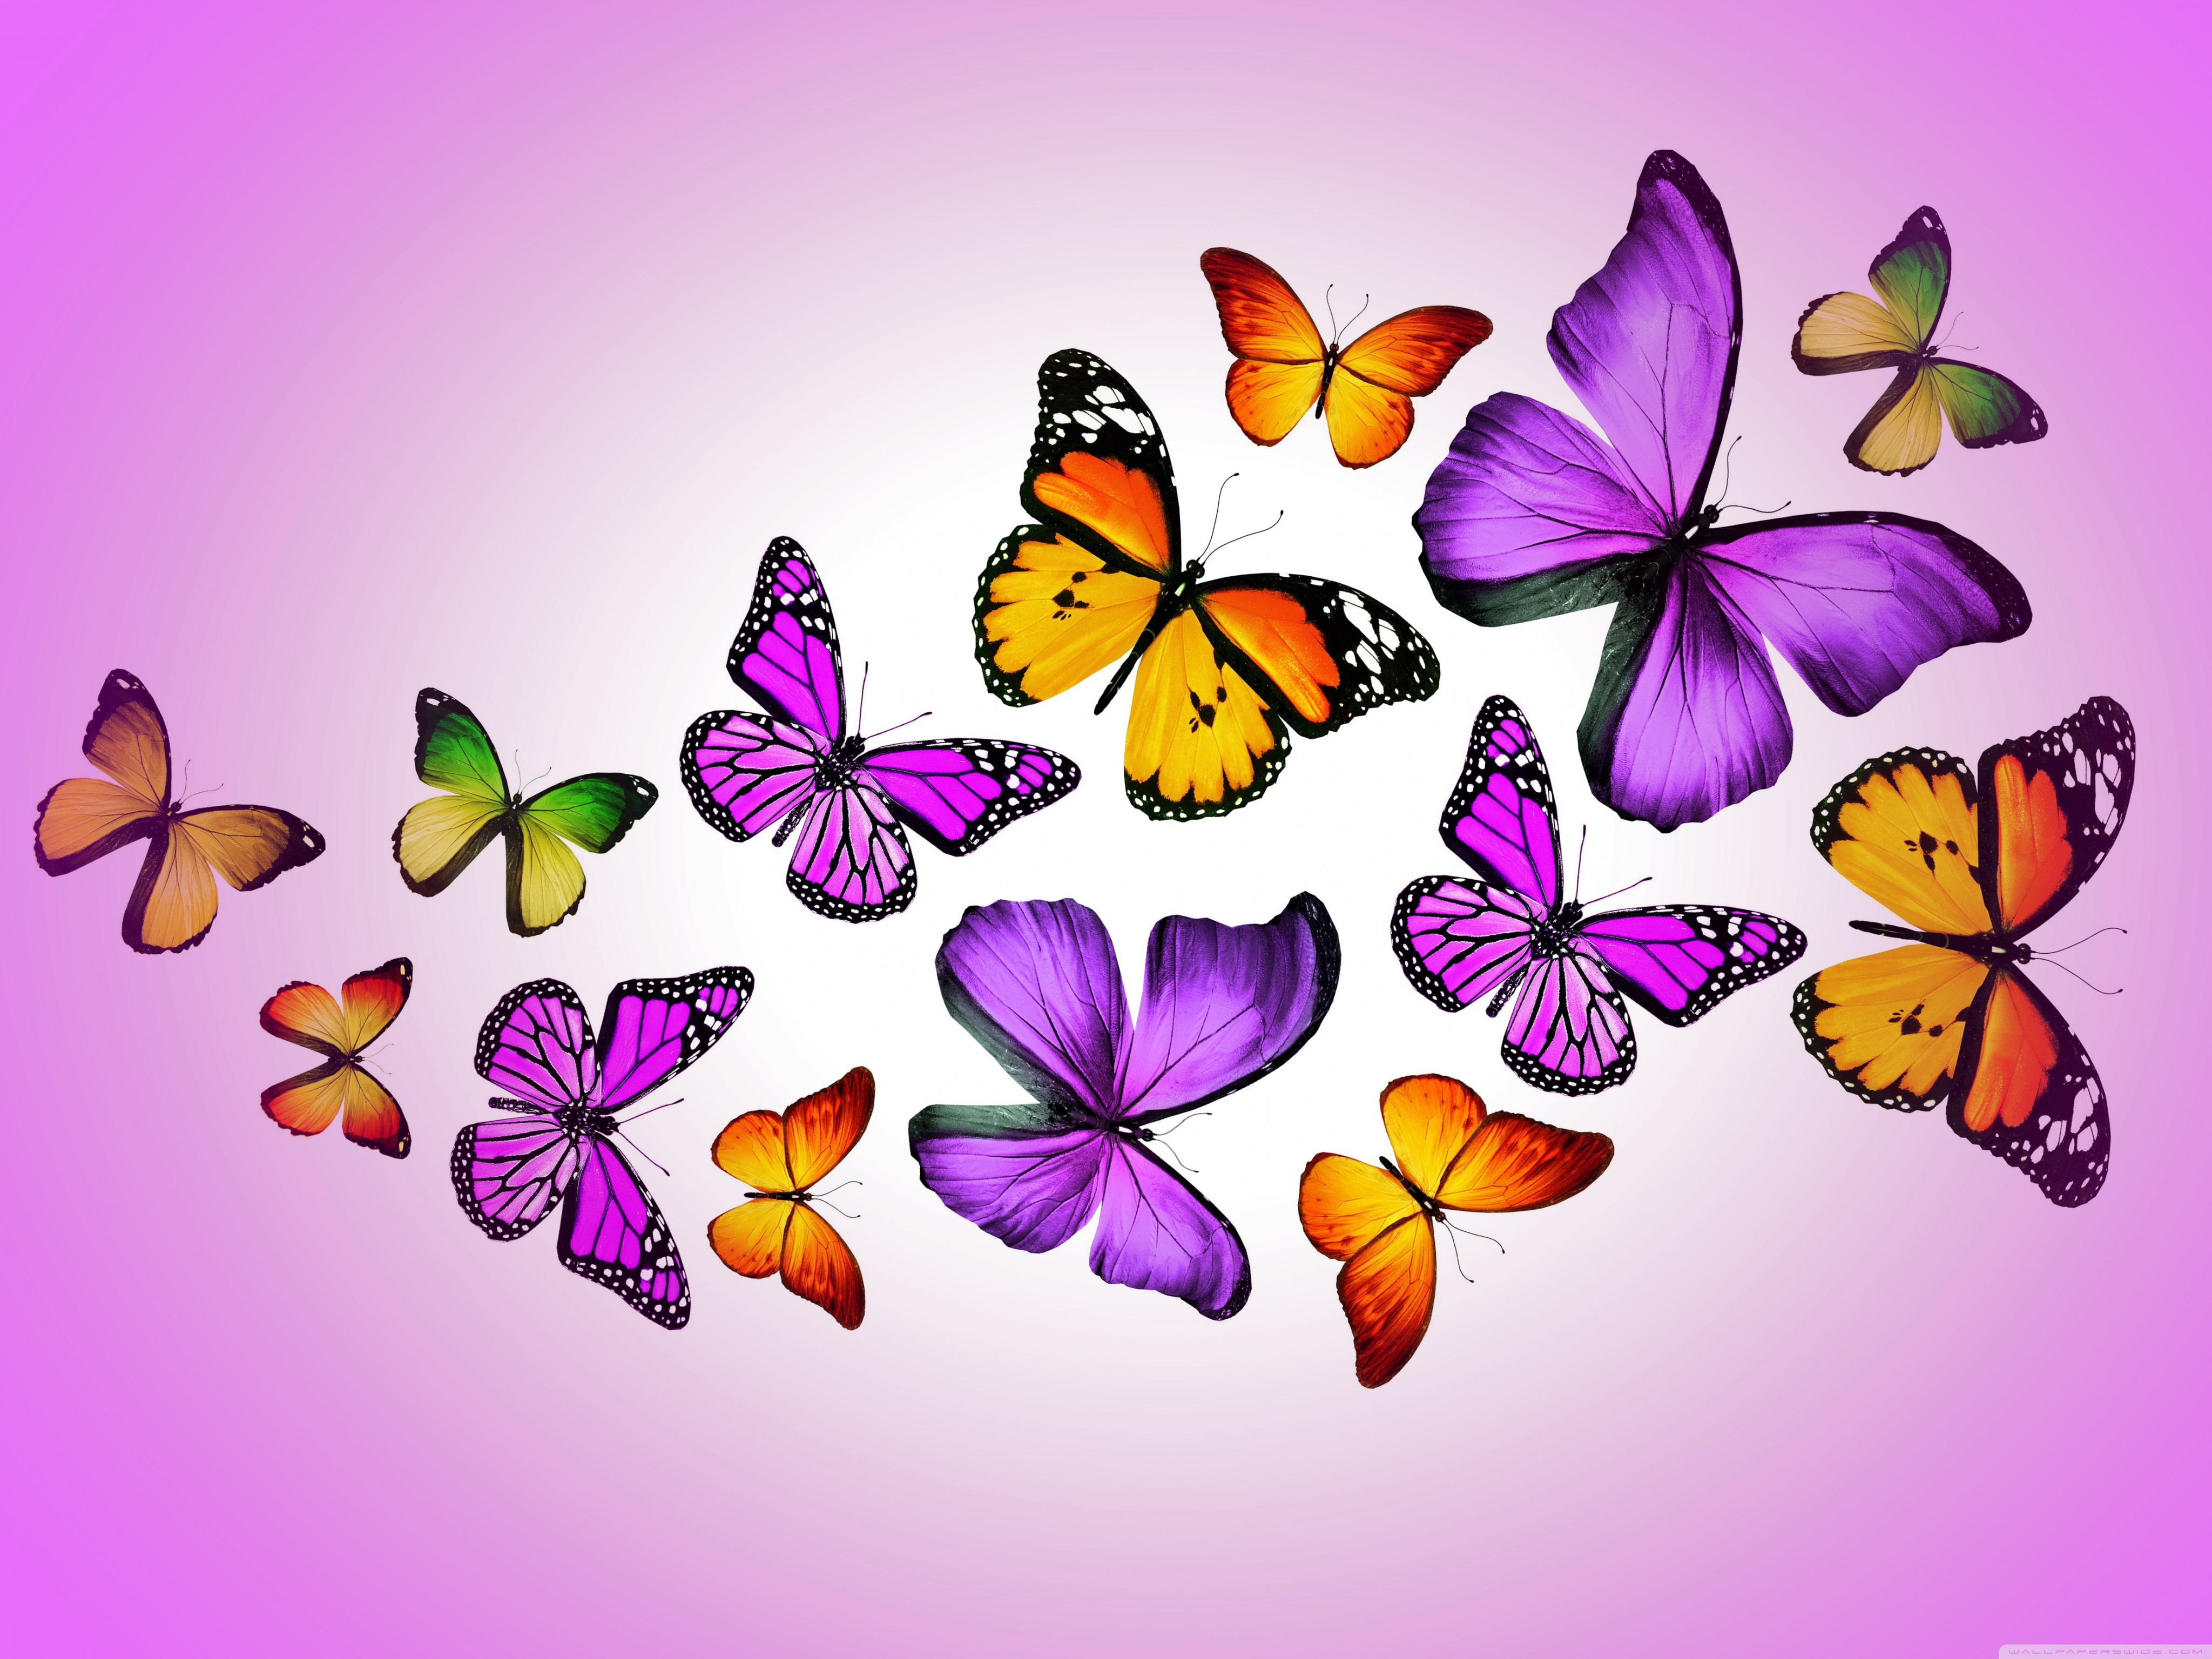 Butterflies wallpaper pictures